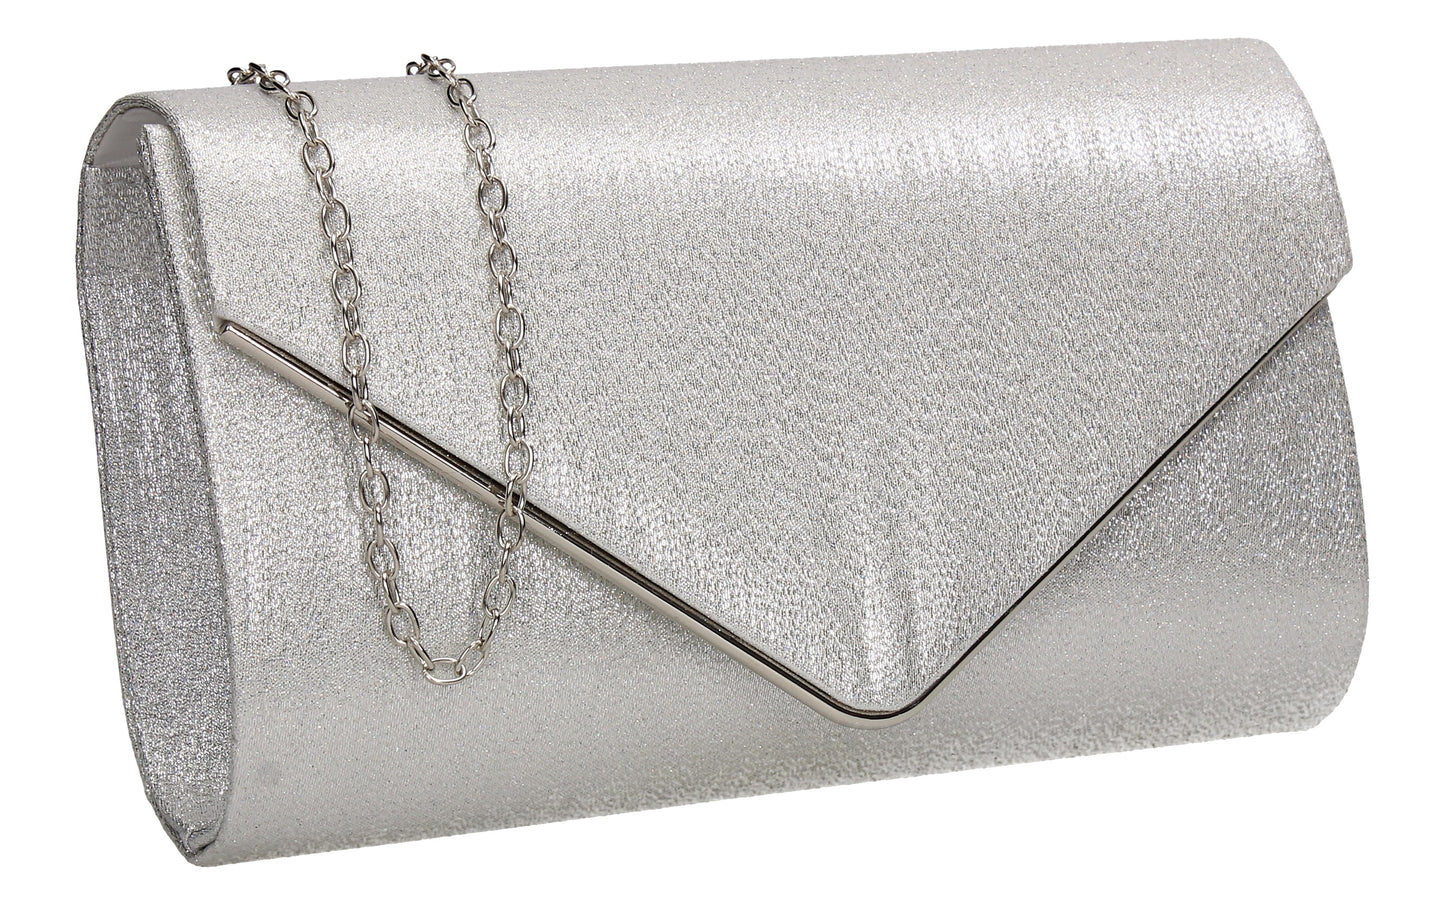 SWANKYSWANS Maya Clutch Bag Silver Cute Cheap Clutch Bag For Weddings School and Work